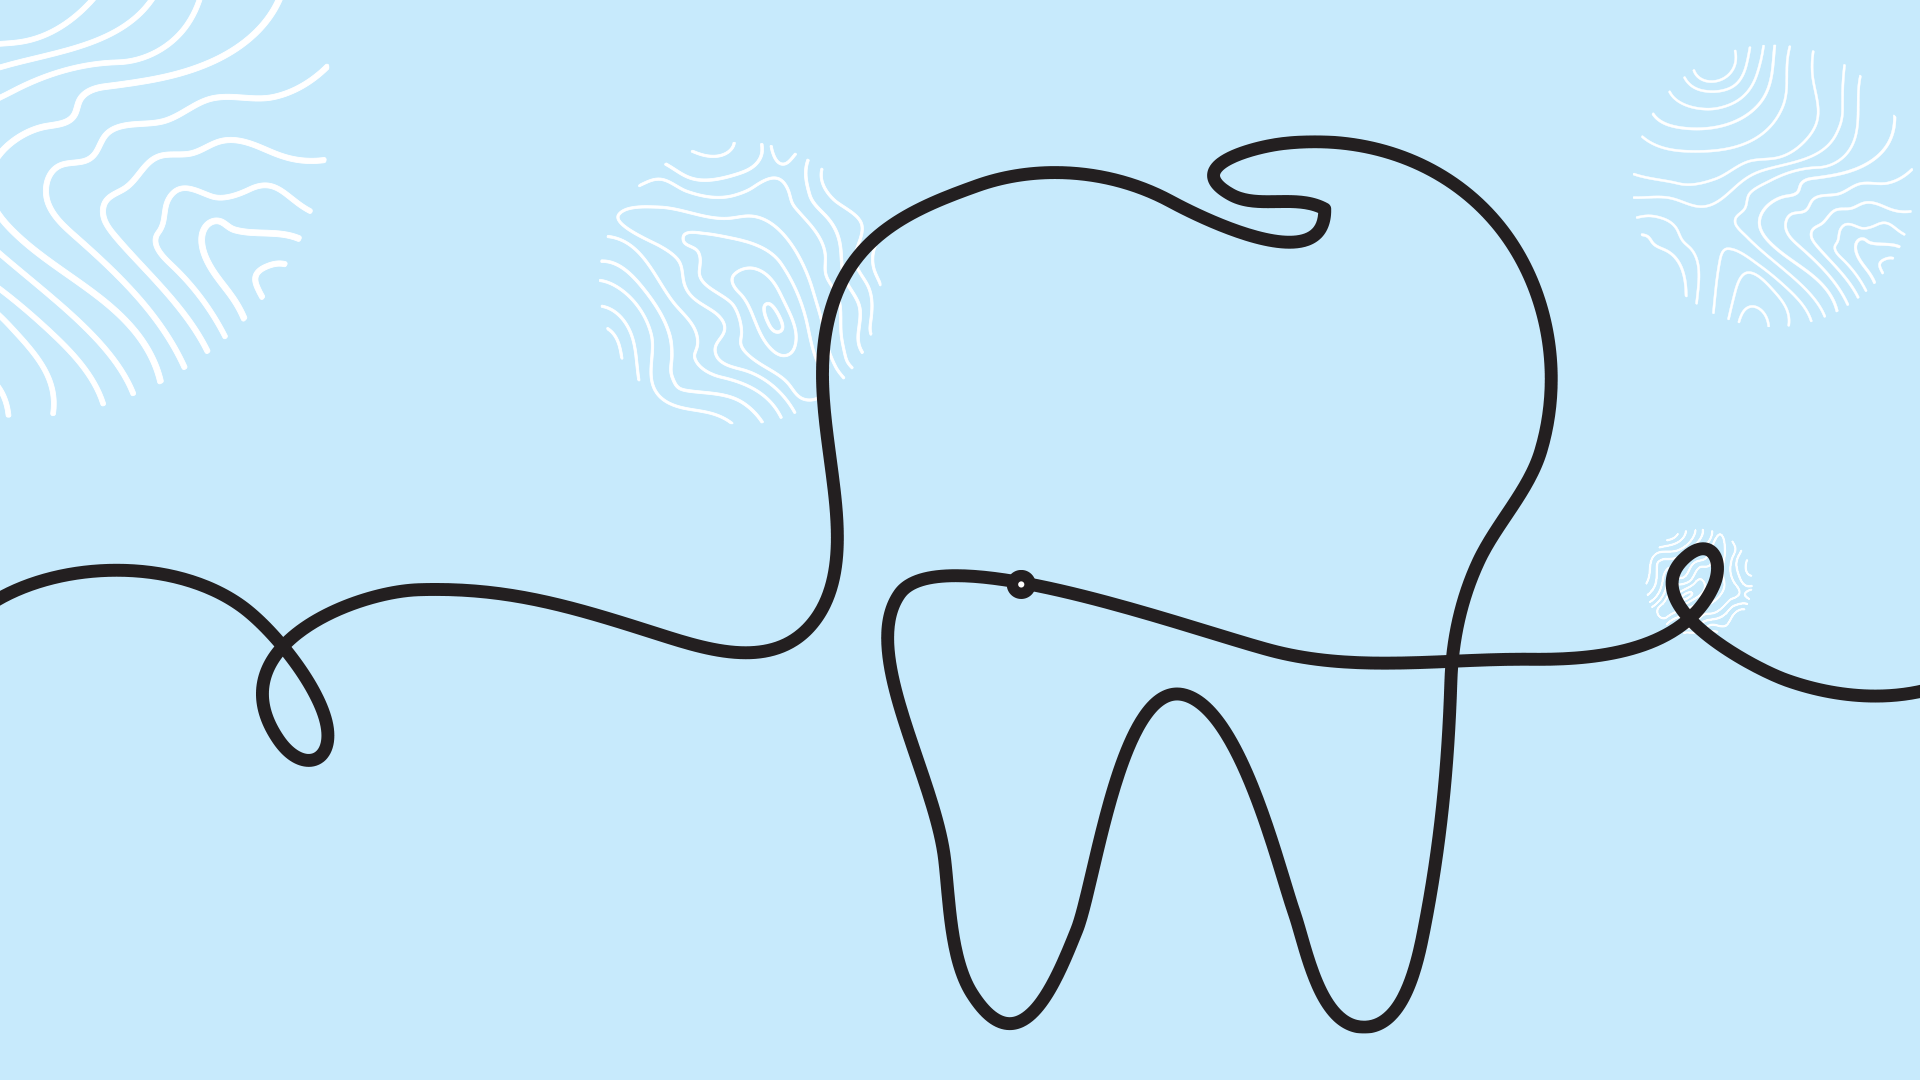 Fio dental: 5 erros comuns ao usá-lo